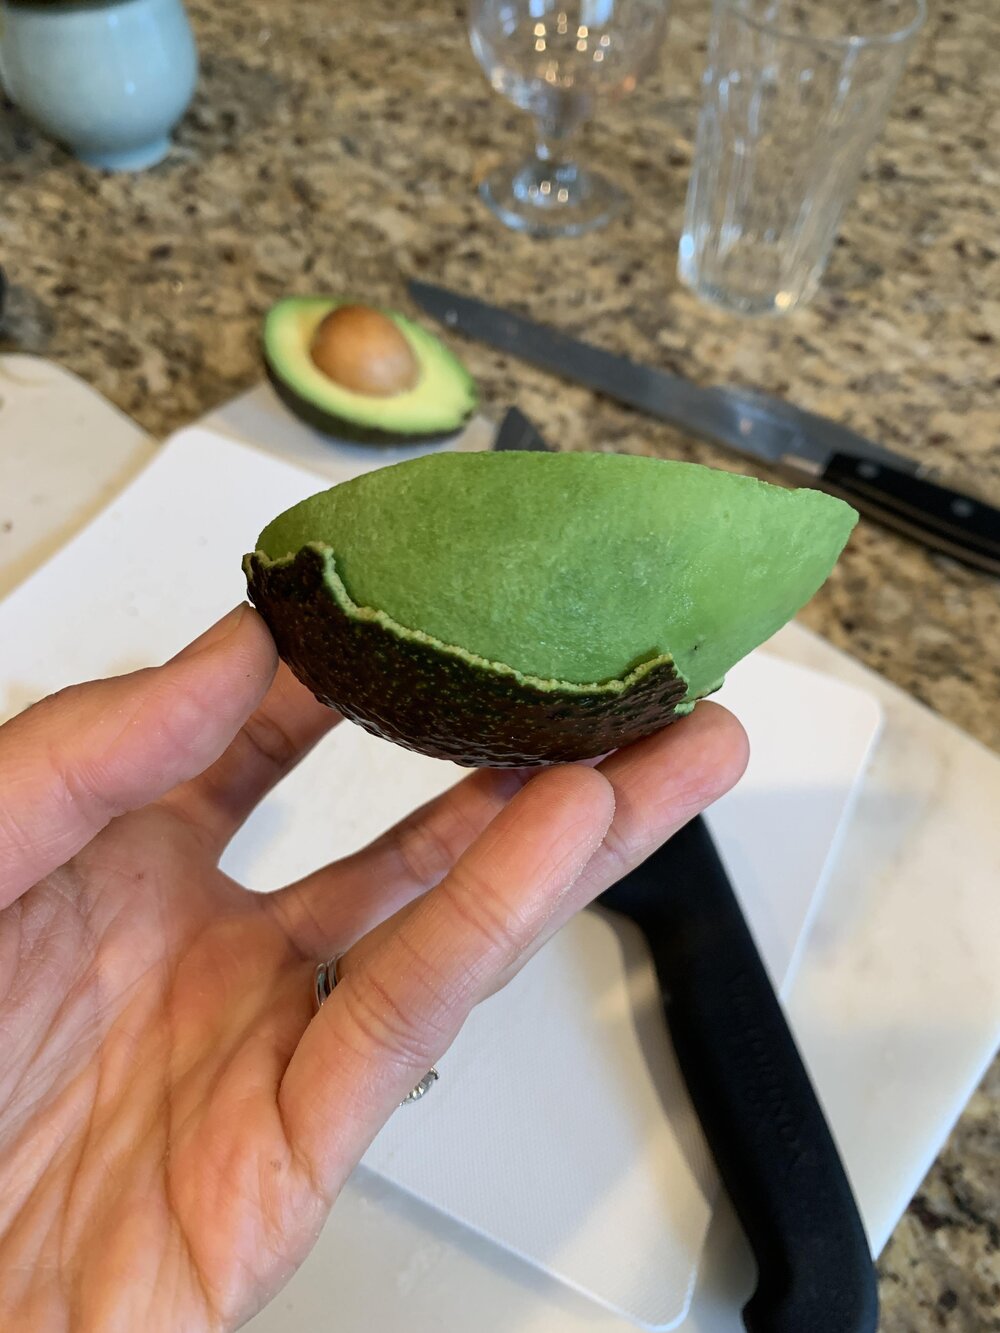 Step 3: Peel the avocado like an orange